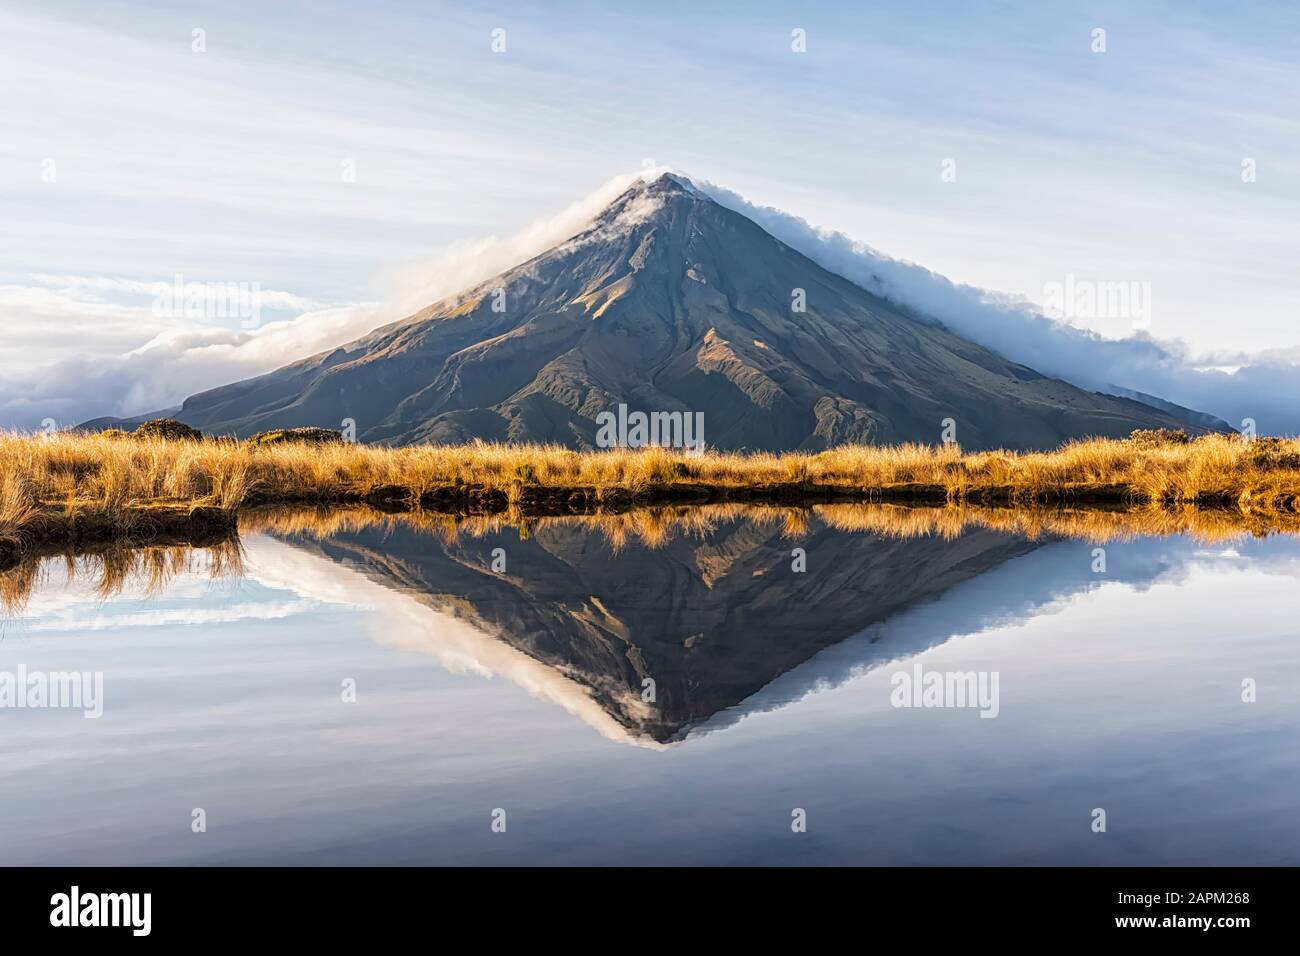 New Zealand, Mount Taranaki volcano reflecting in shiny lake at dawn Stock Photo